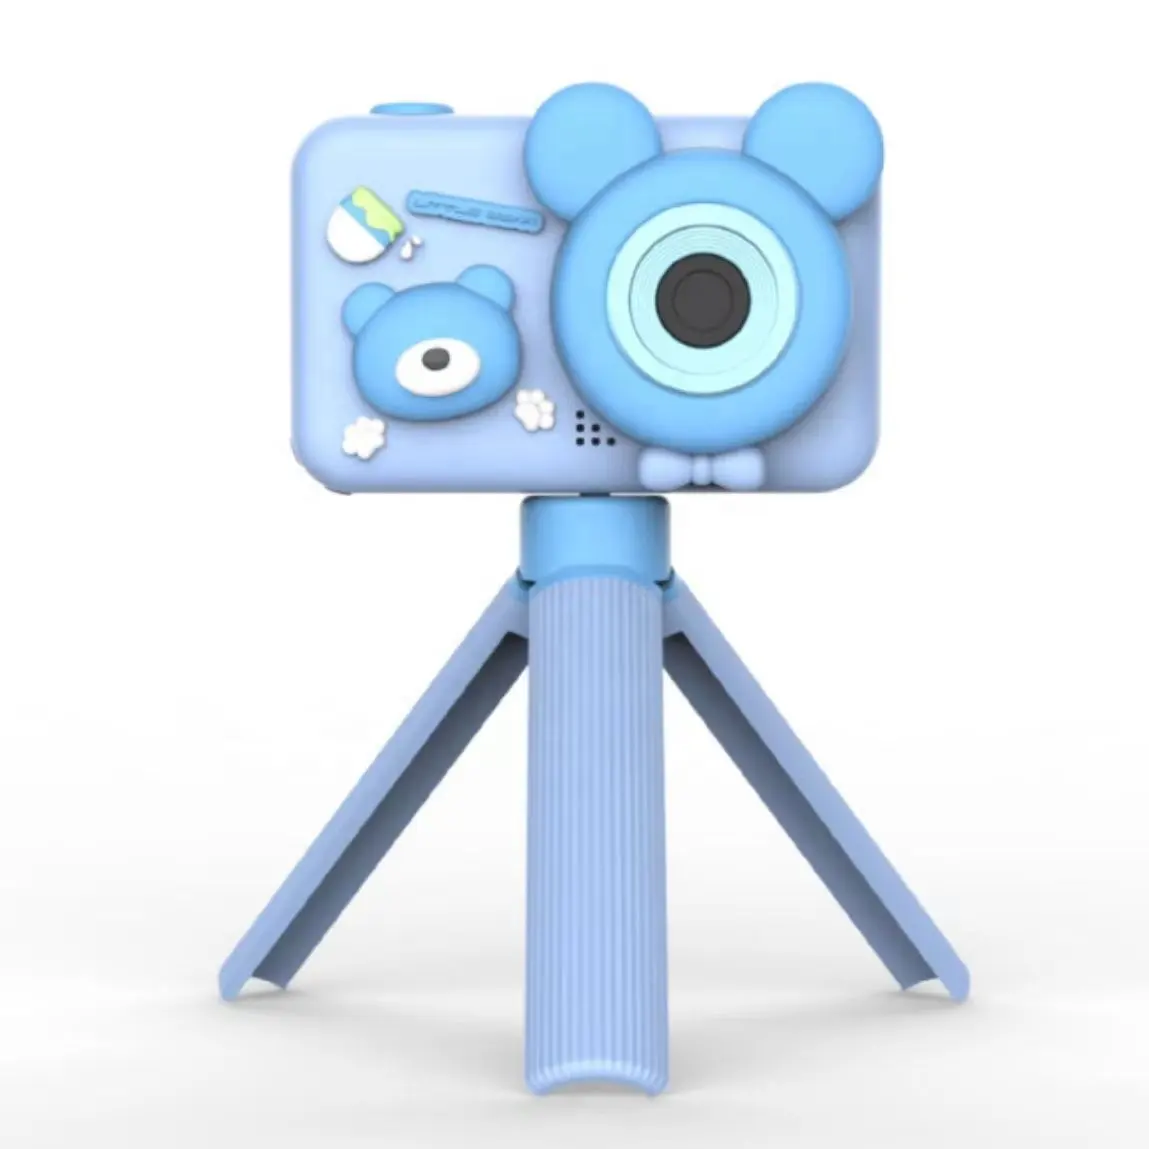 D32 Selfie sopa ile ayrılabilir kolu dahili oyunlar Mini Hd dijital kamera çocuklar için 2.0 inç Ips ekran ucuz kamera